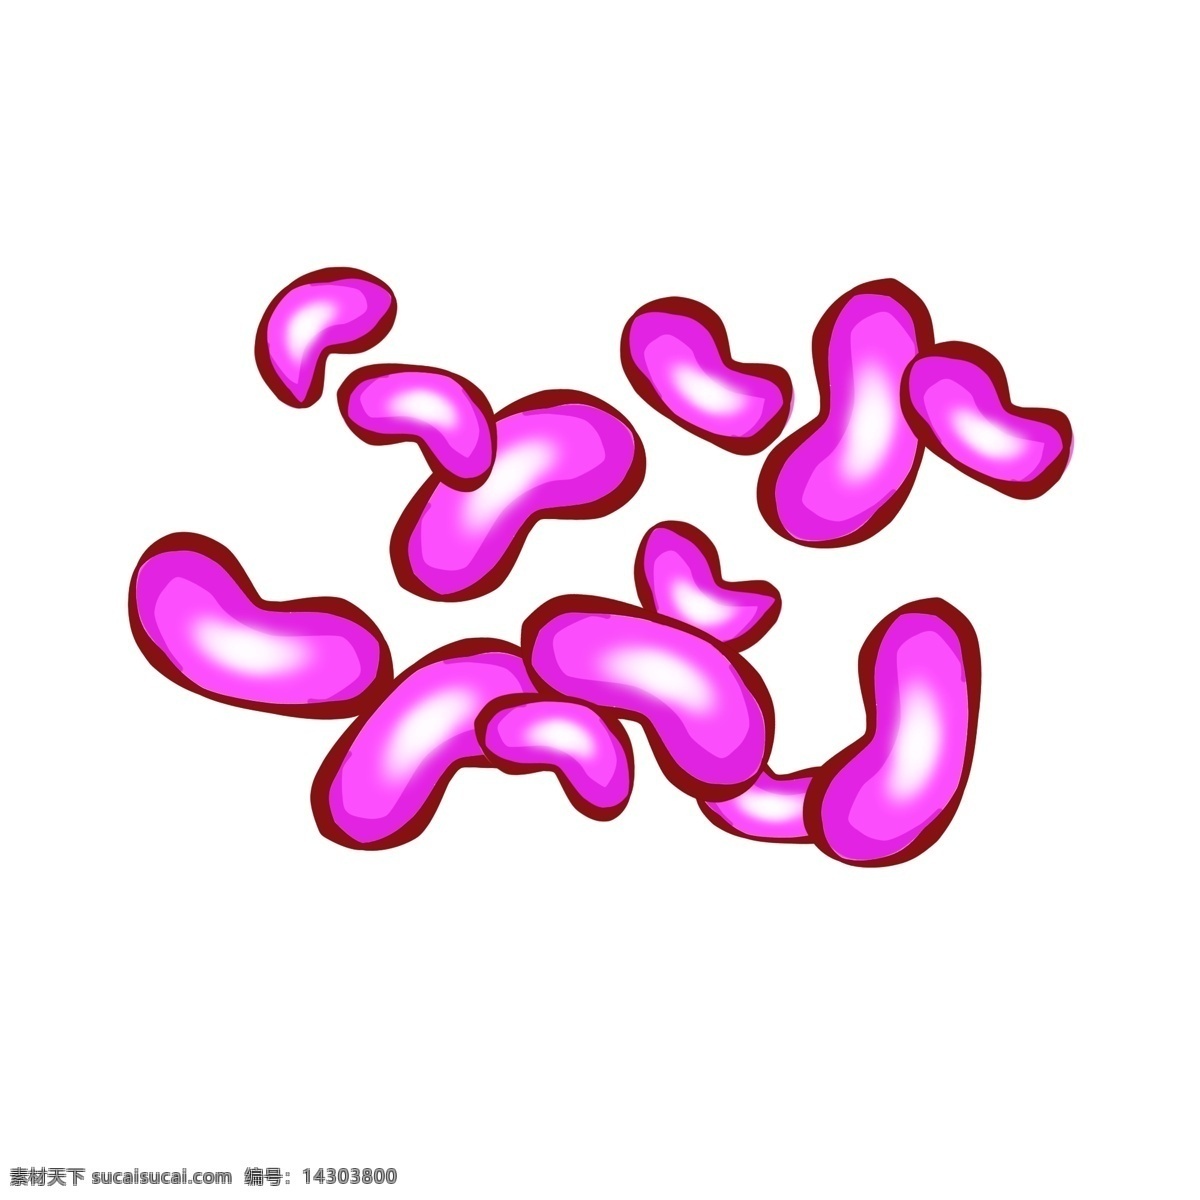 粉色 小型 杆菌 插画 粉色的杆菌 细菌插画 生物杆菌 卡通细菌插画 细菌 病菌插画 粉色杆菌插画 病菌